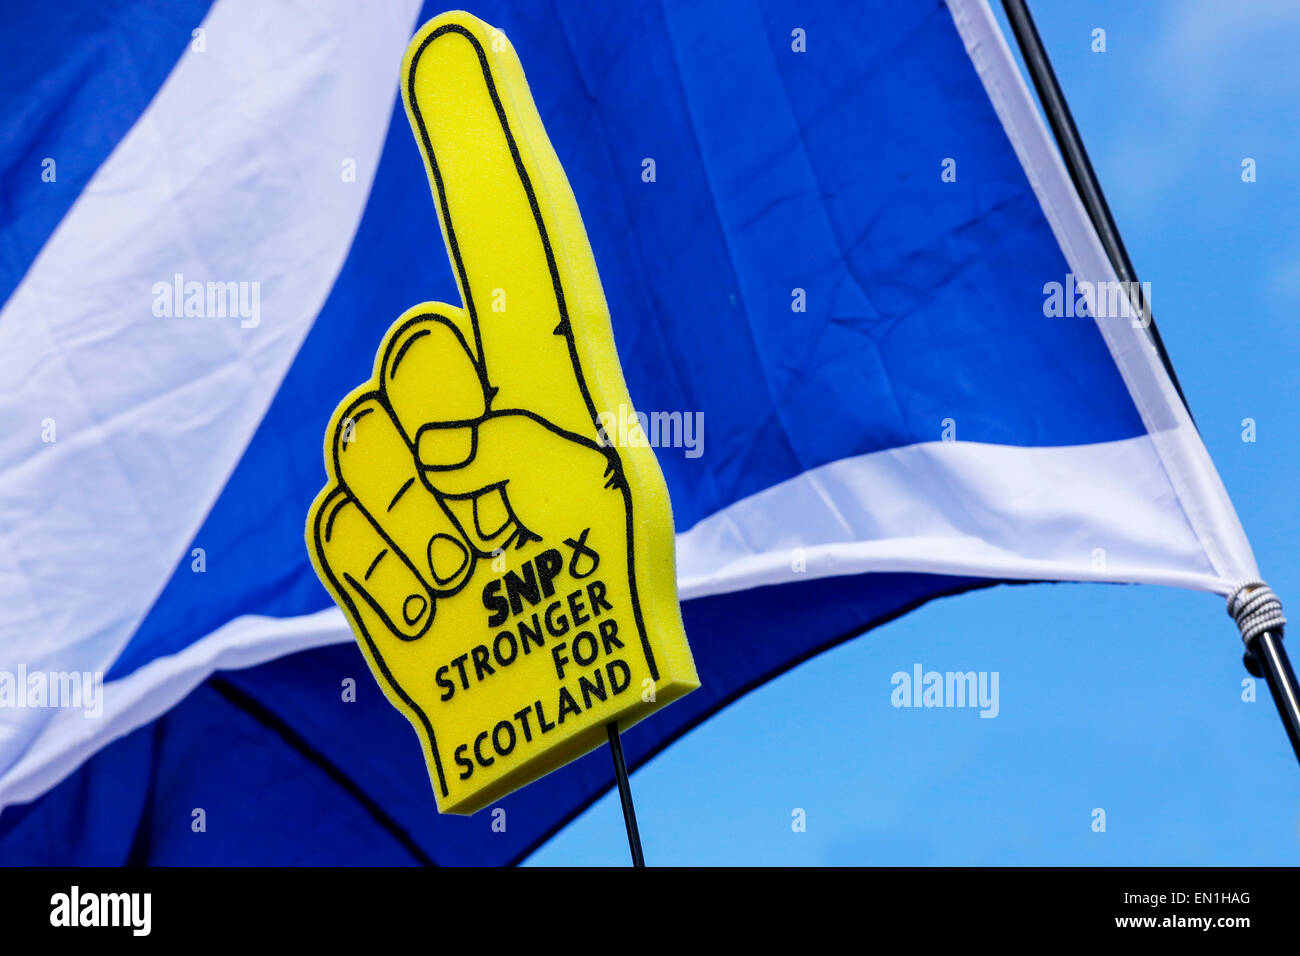 Schaum-Handschuh Werbung die Scottish National Party, SNP, gegen eine schottische Andreaskreuz Flagge fotografiert. Stockfoto